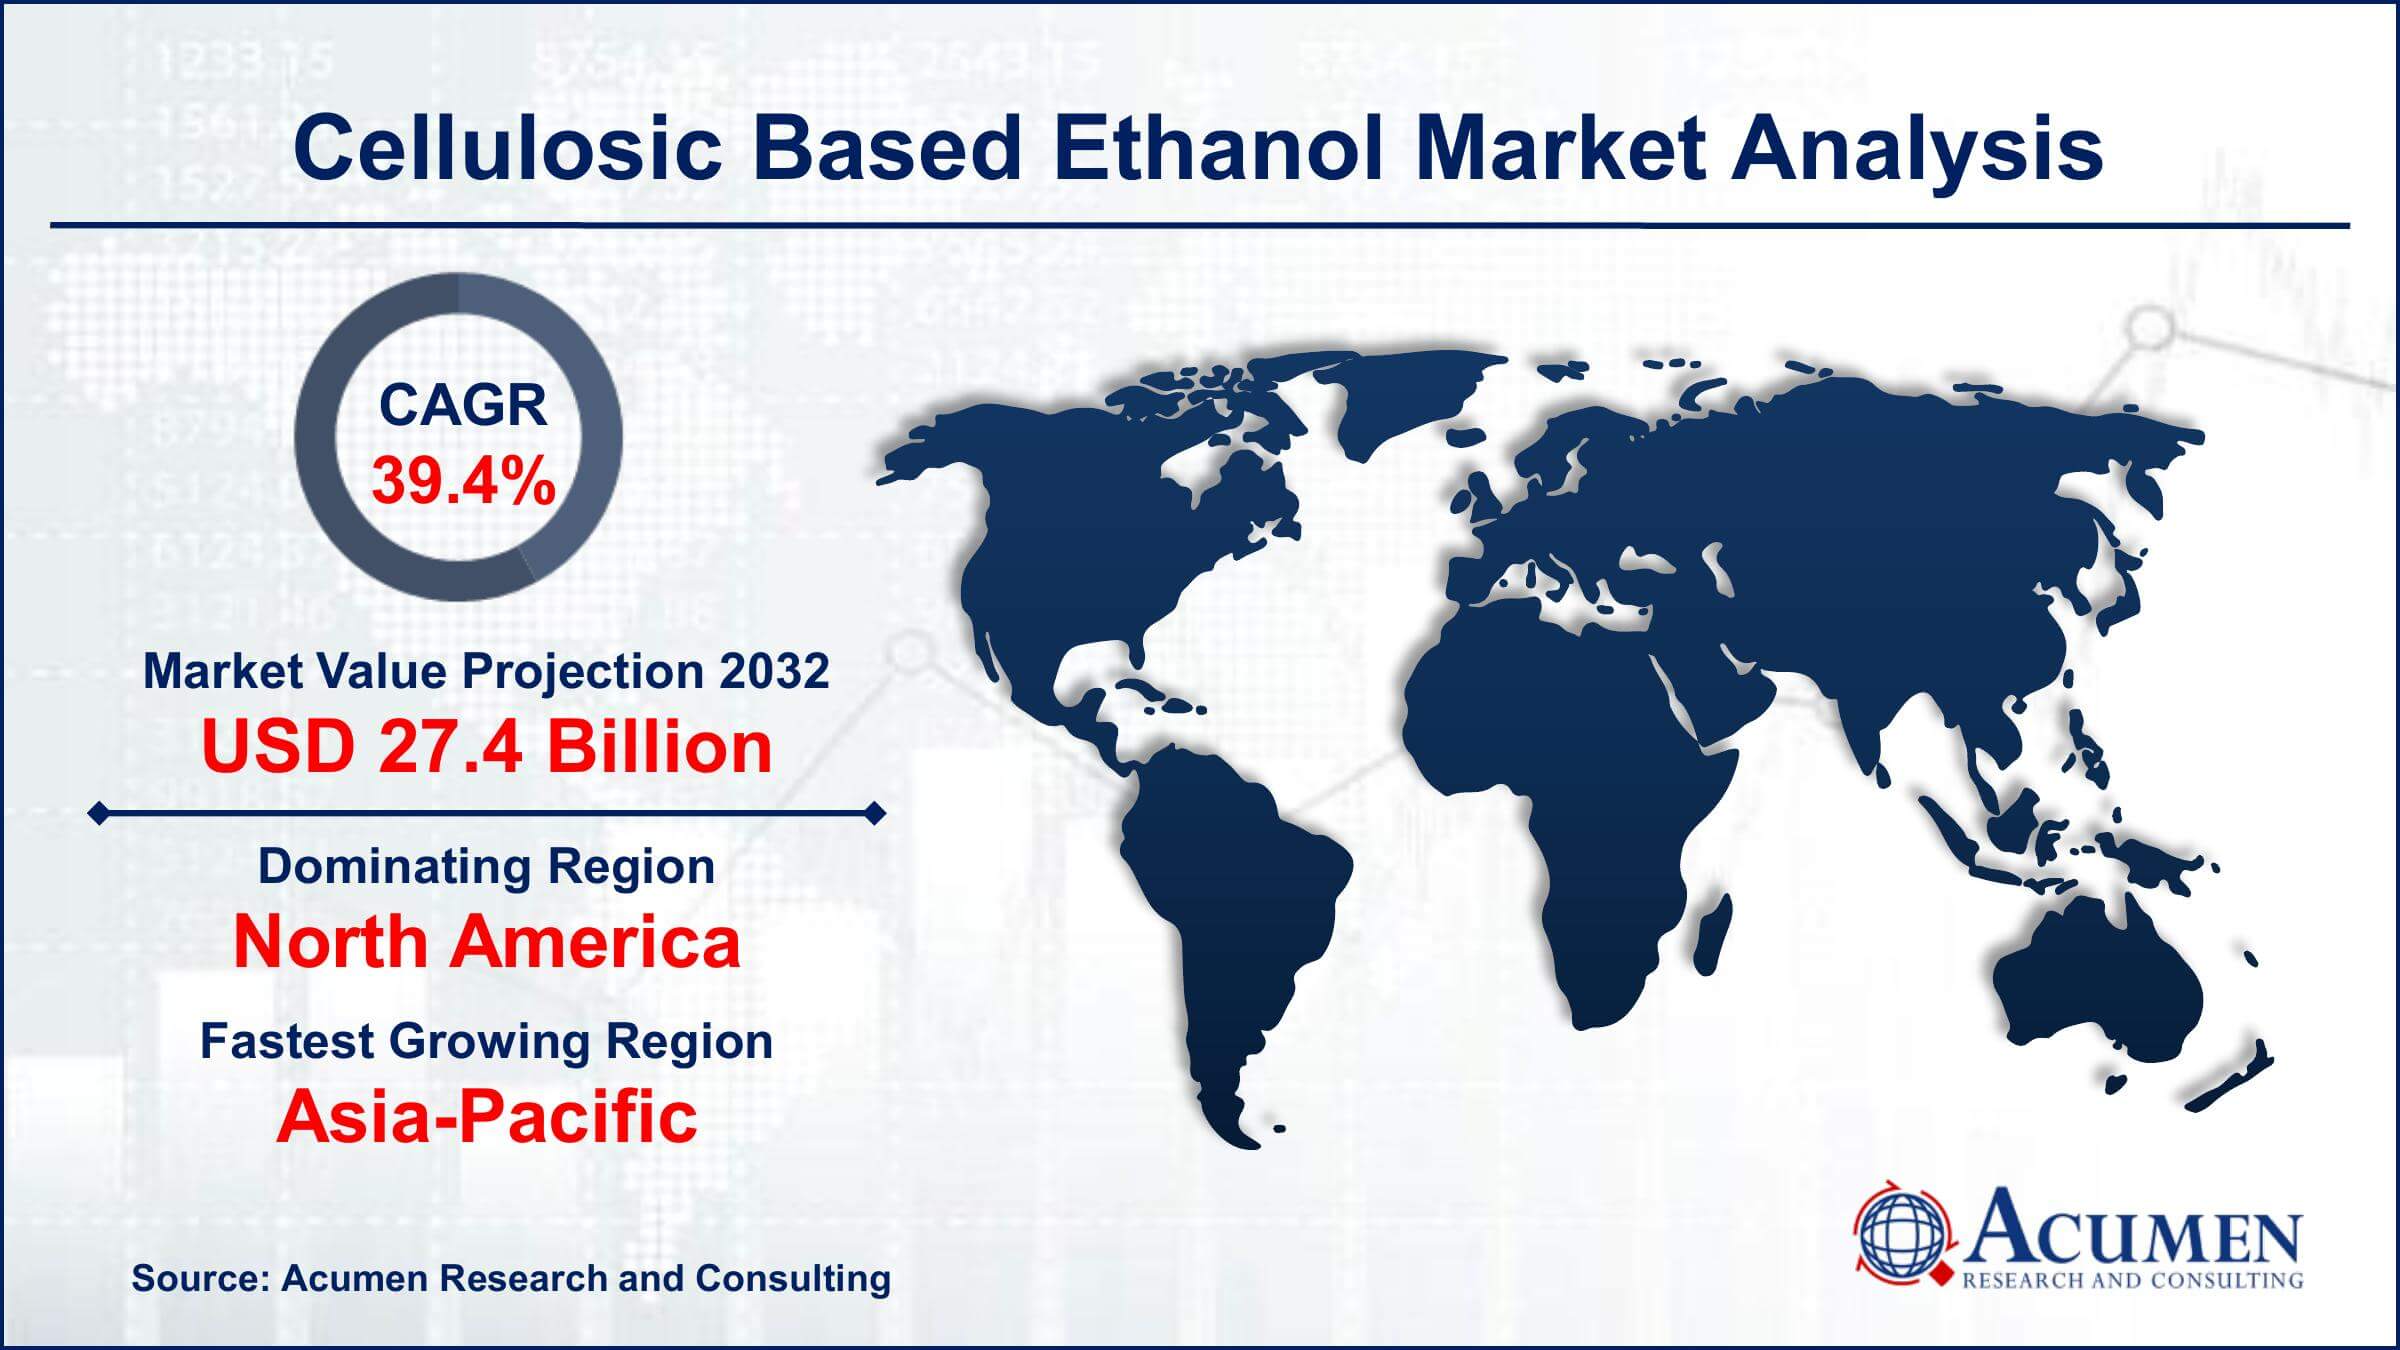 Global Cellulosic Based Ethanol Market Trends